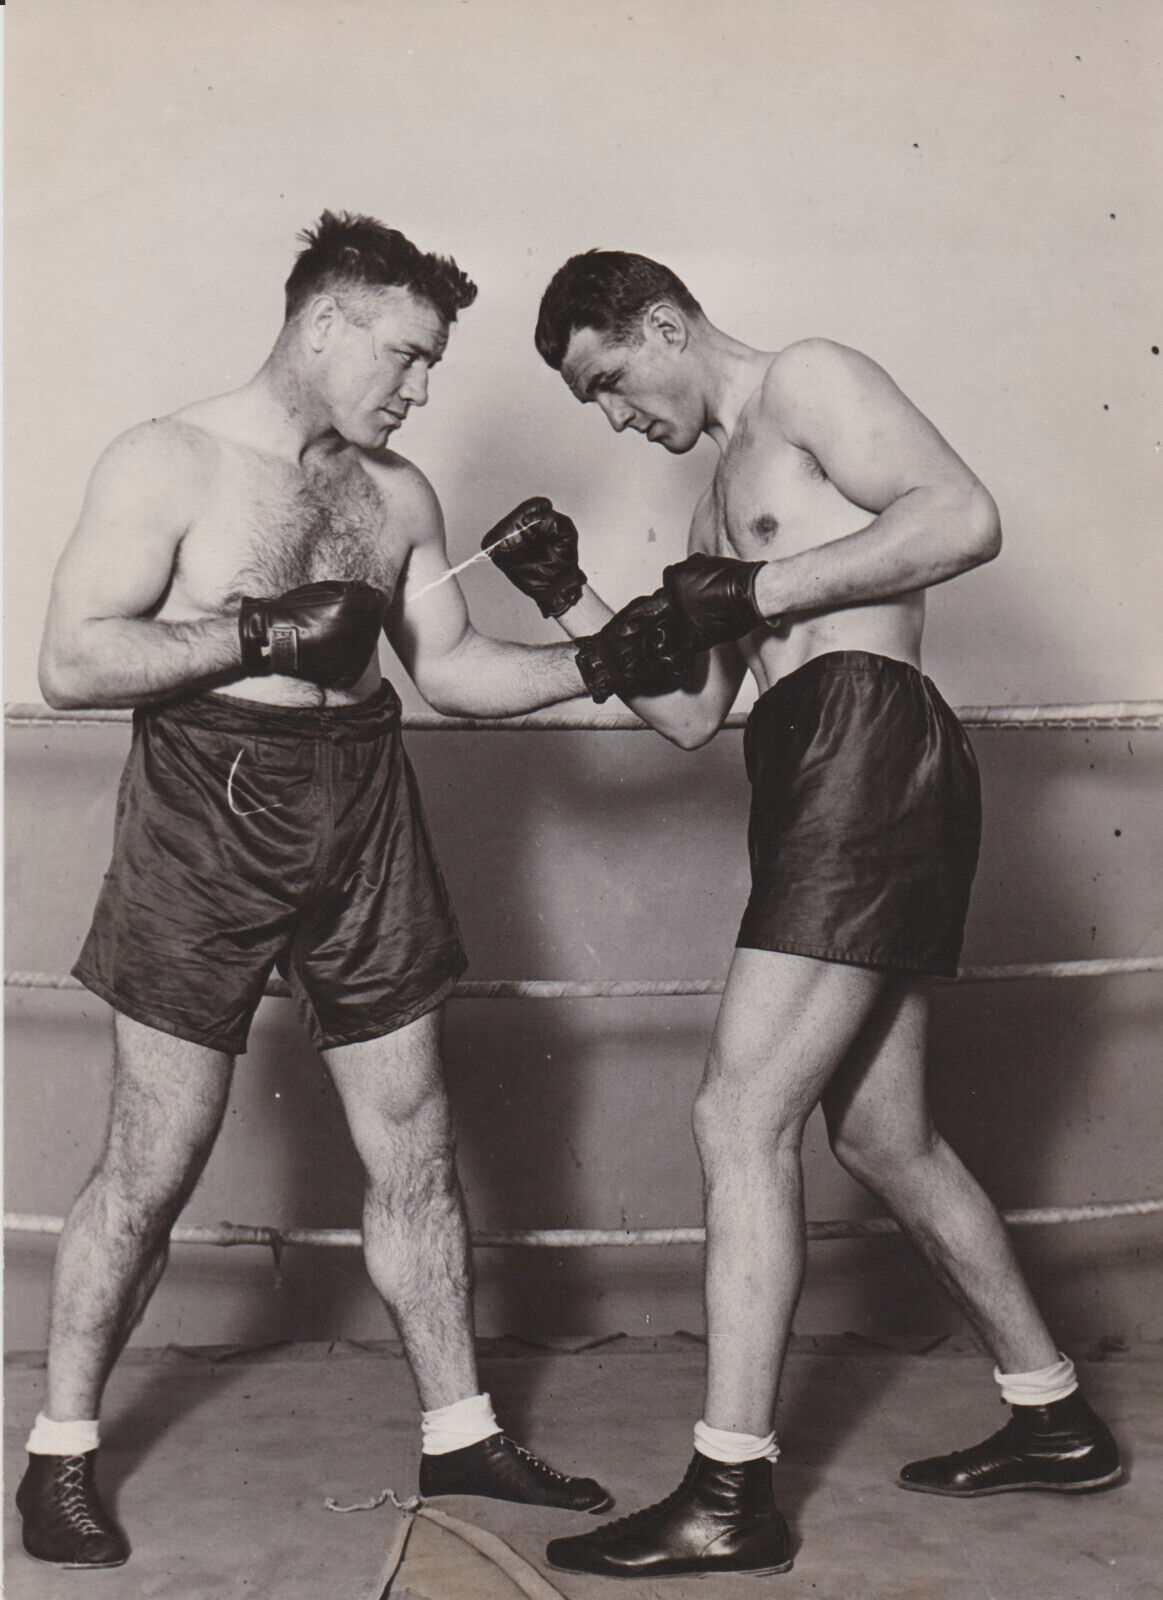 1929 Press Photo Heavyweight Boxers Tom Heeney and Otto Von Porat